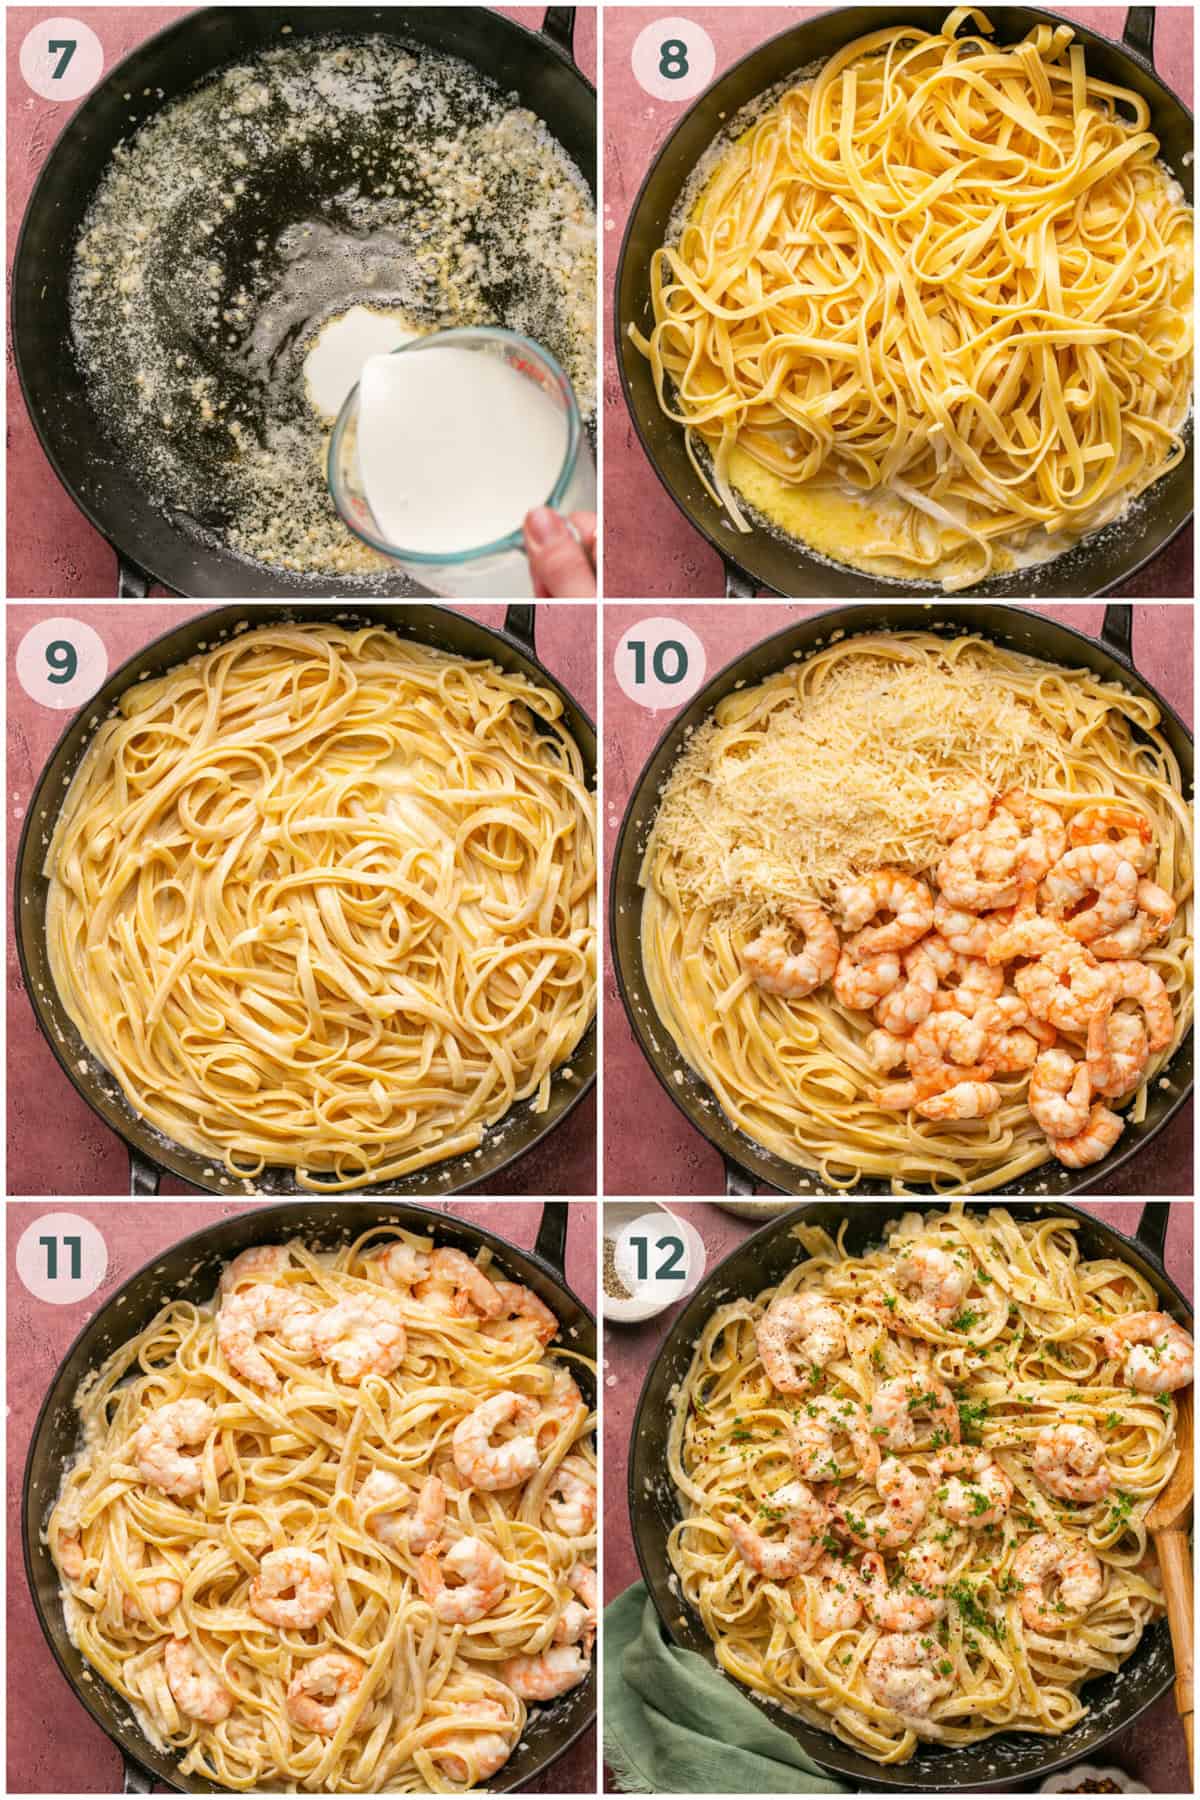 steps 7-12 for shrimp alfredo pasta recipe